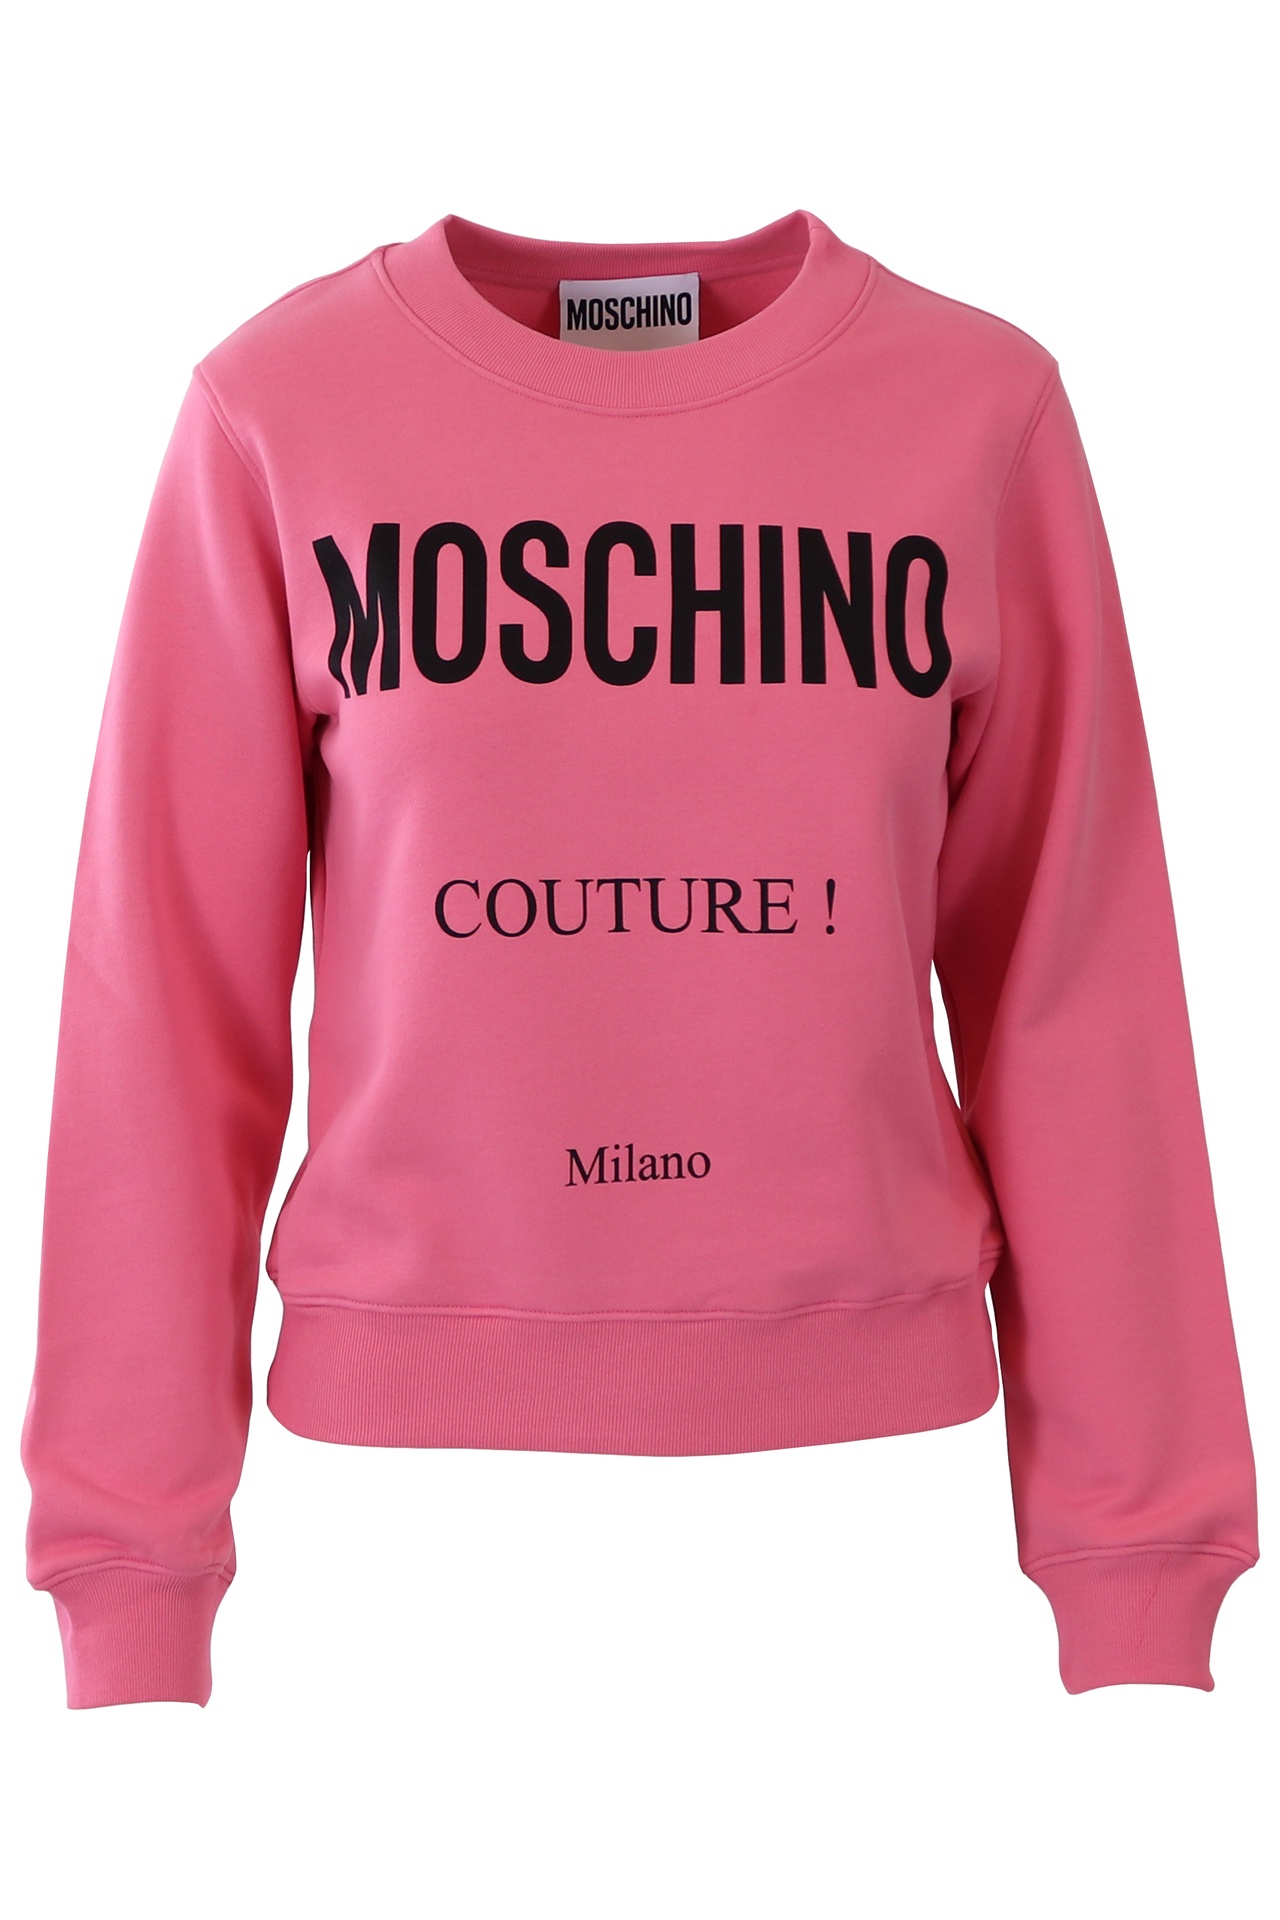 Moschino - Sudadera Moschino Couture rosa couture milano - BLS Fashion